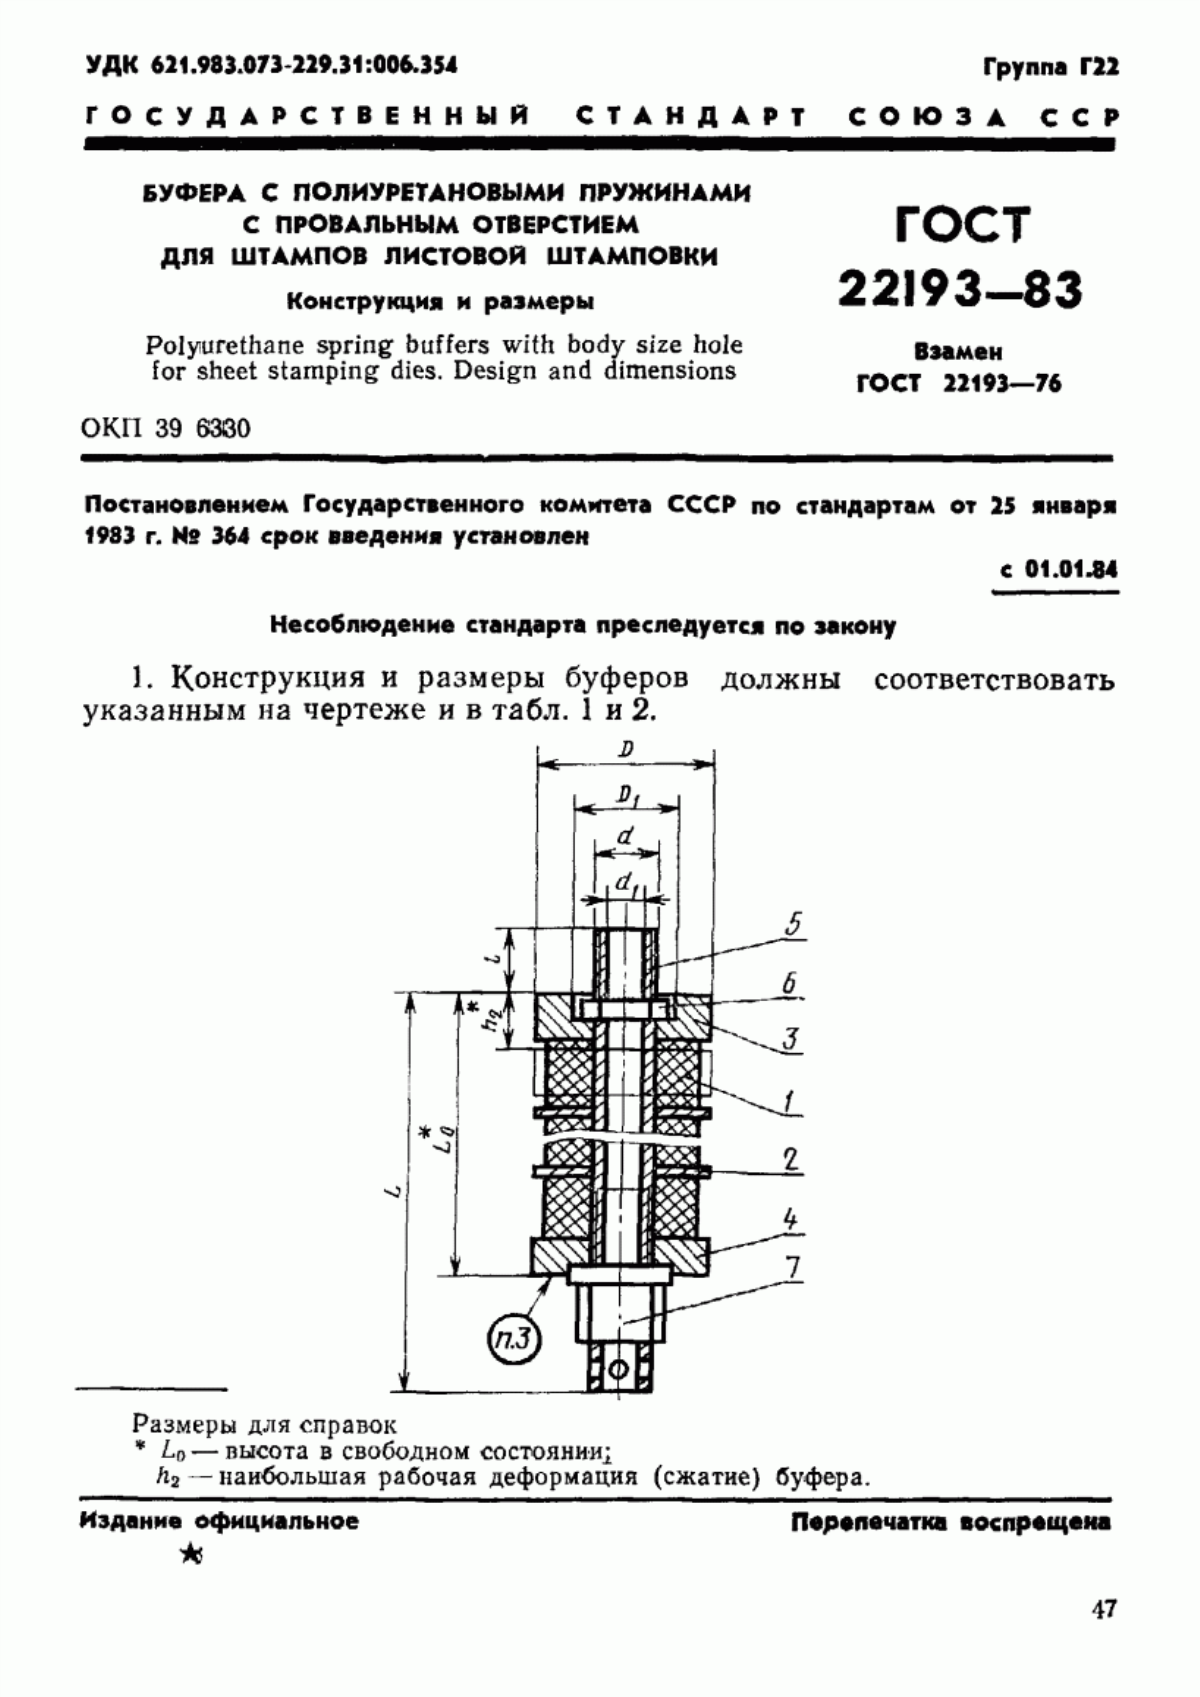 ГОСТ 22193-83 Буфера с полиуретановыми пружинами с провальным отверстием для штампов листовой штамповки. Конструкция и размеры